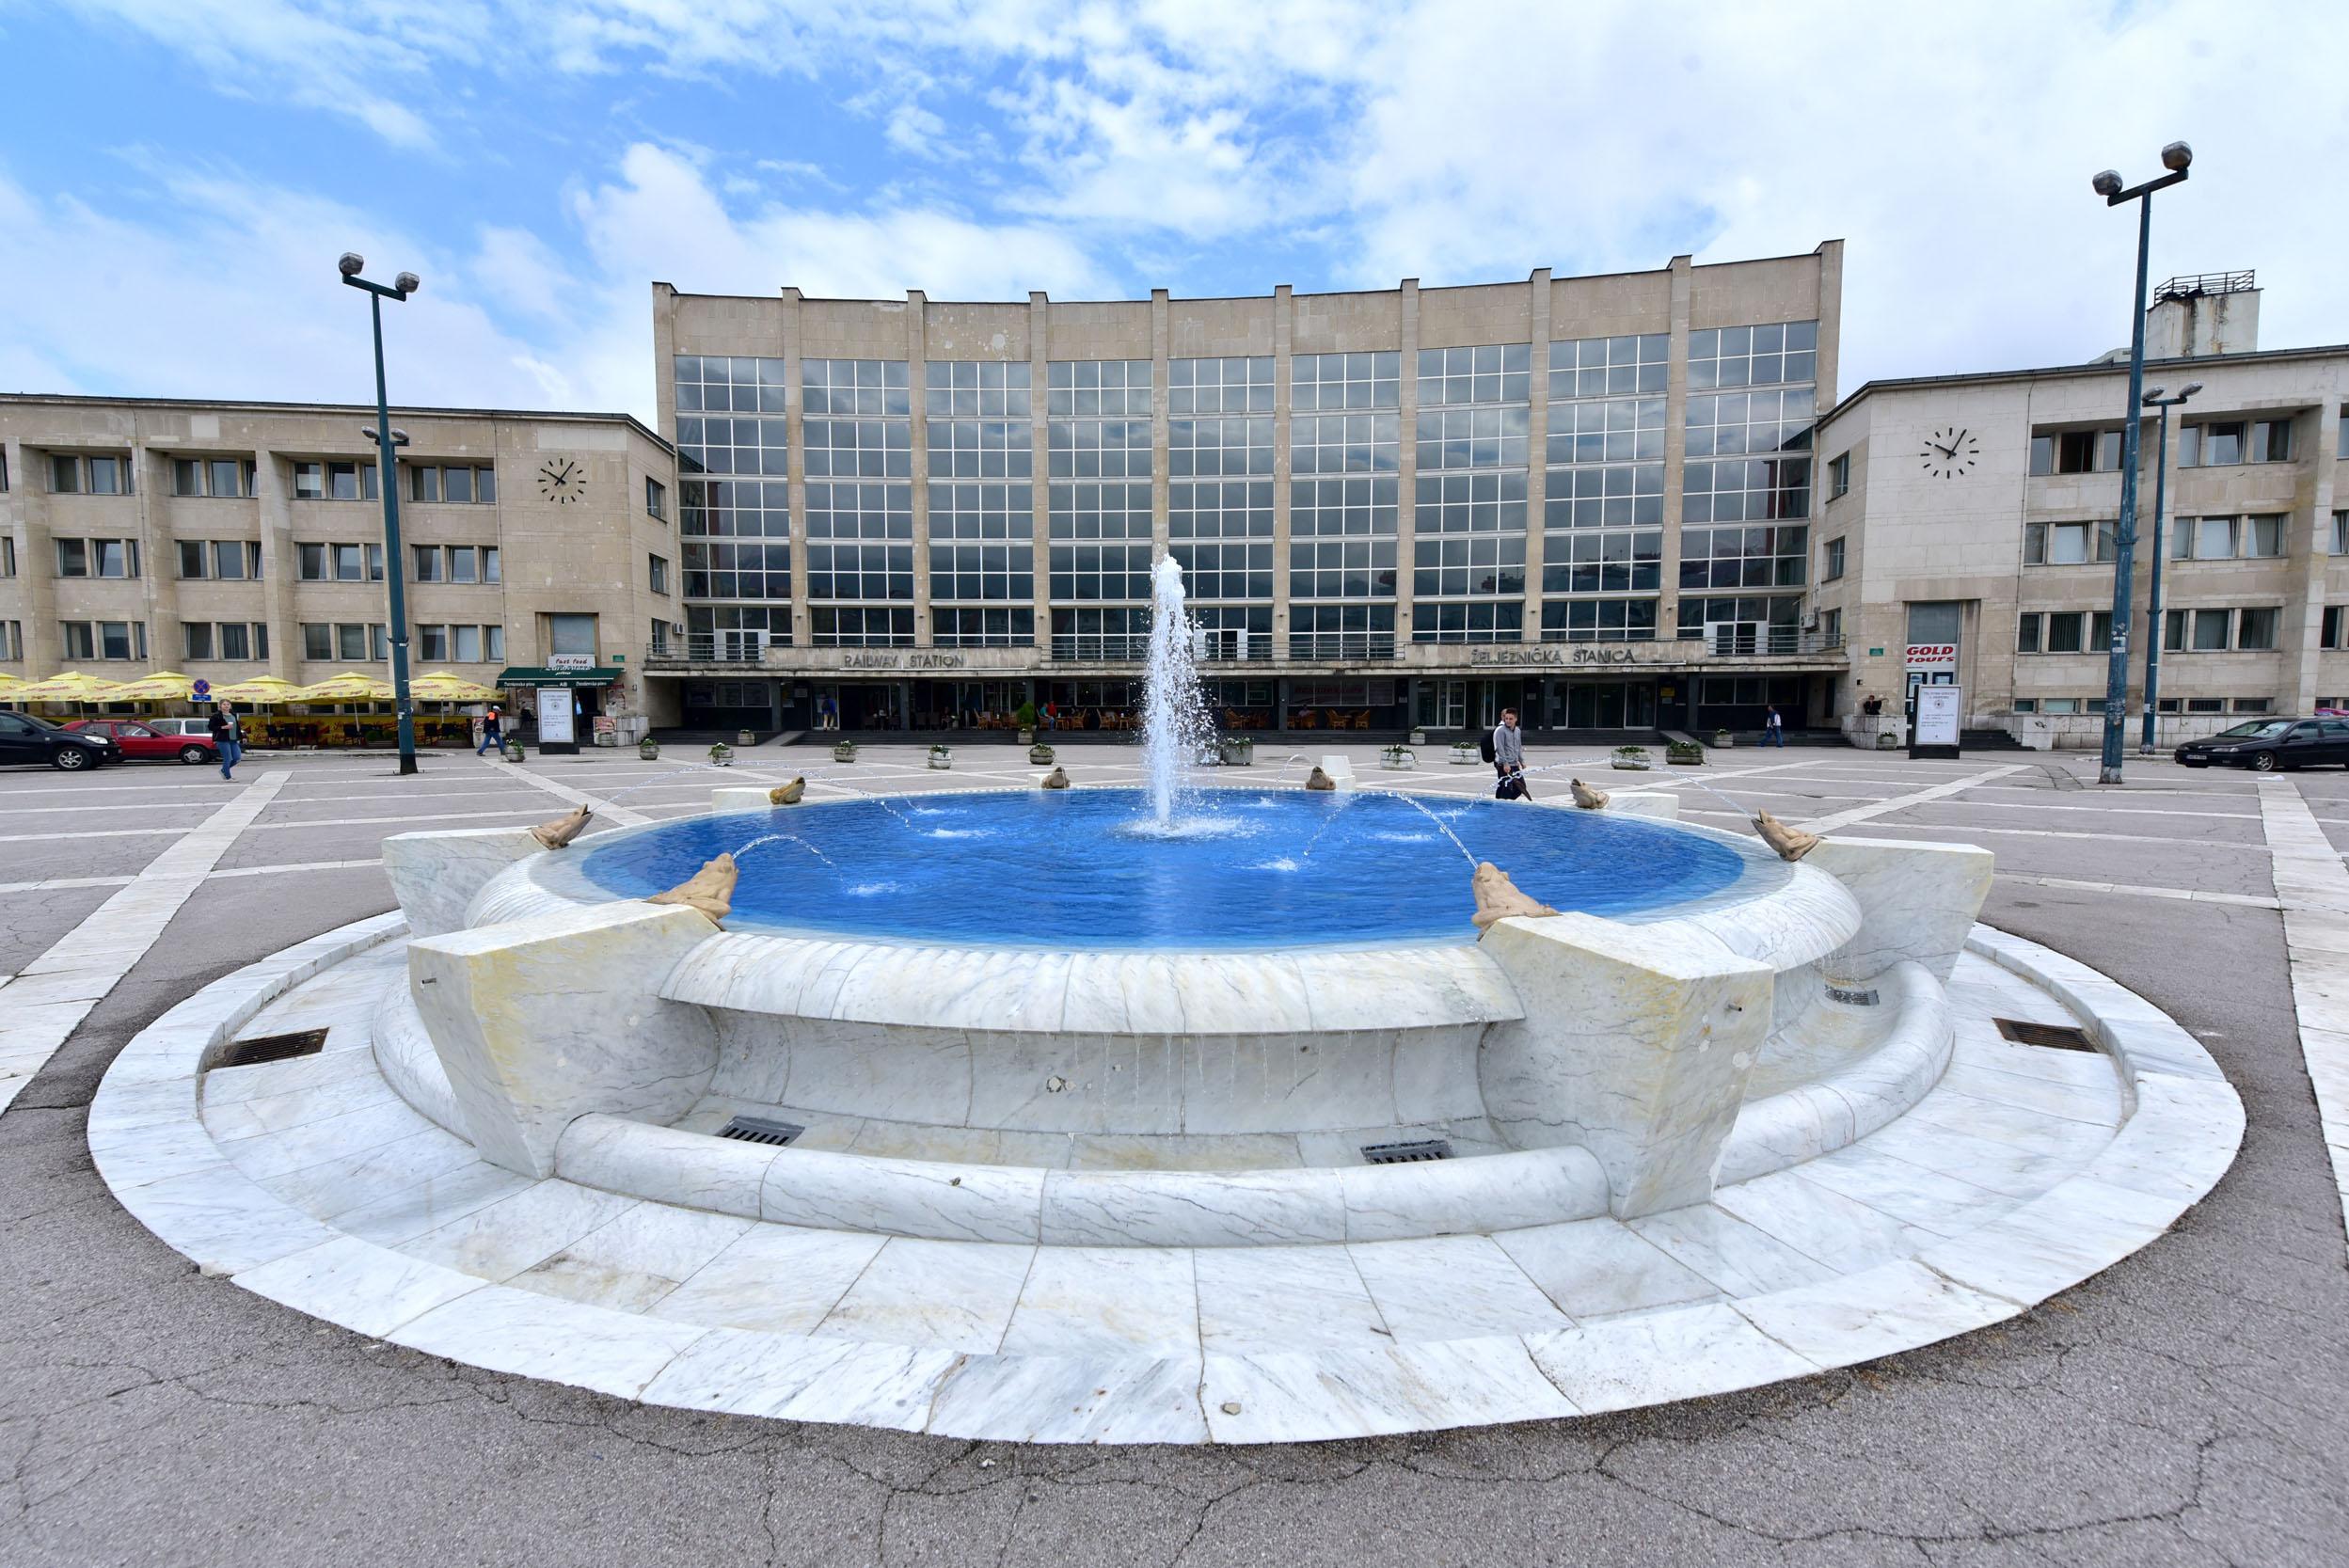 Obnovljena fontana na Željezničkoj stanici u Sarajevu napokon vratila stari sjaj gradu